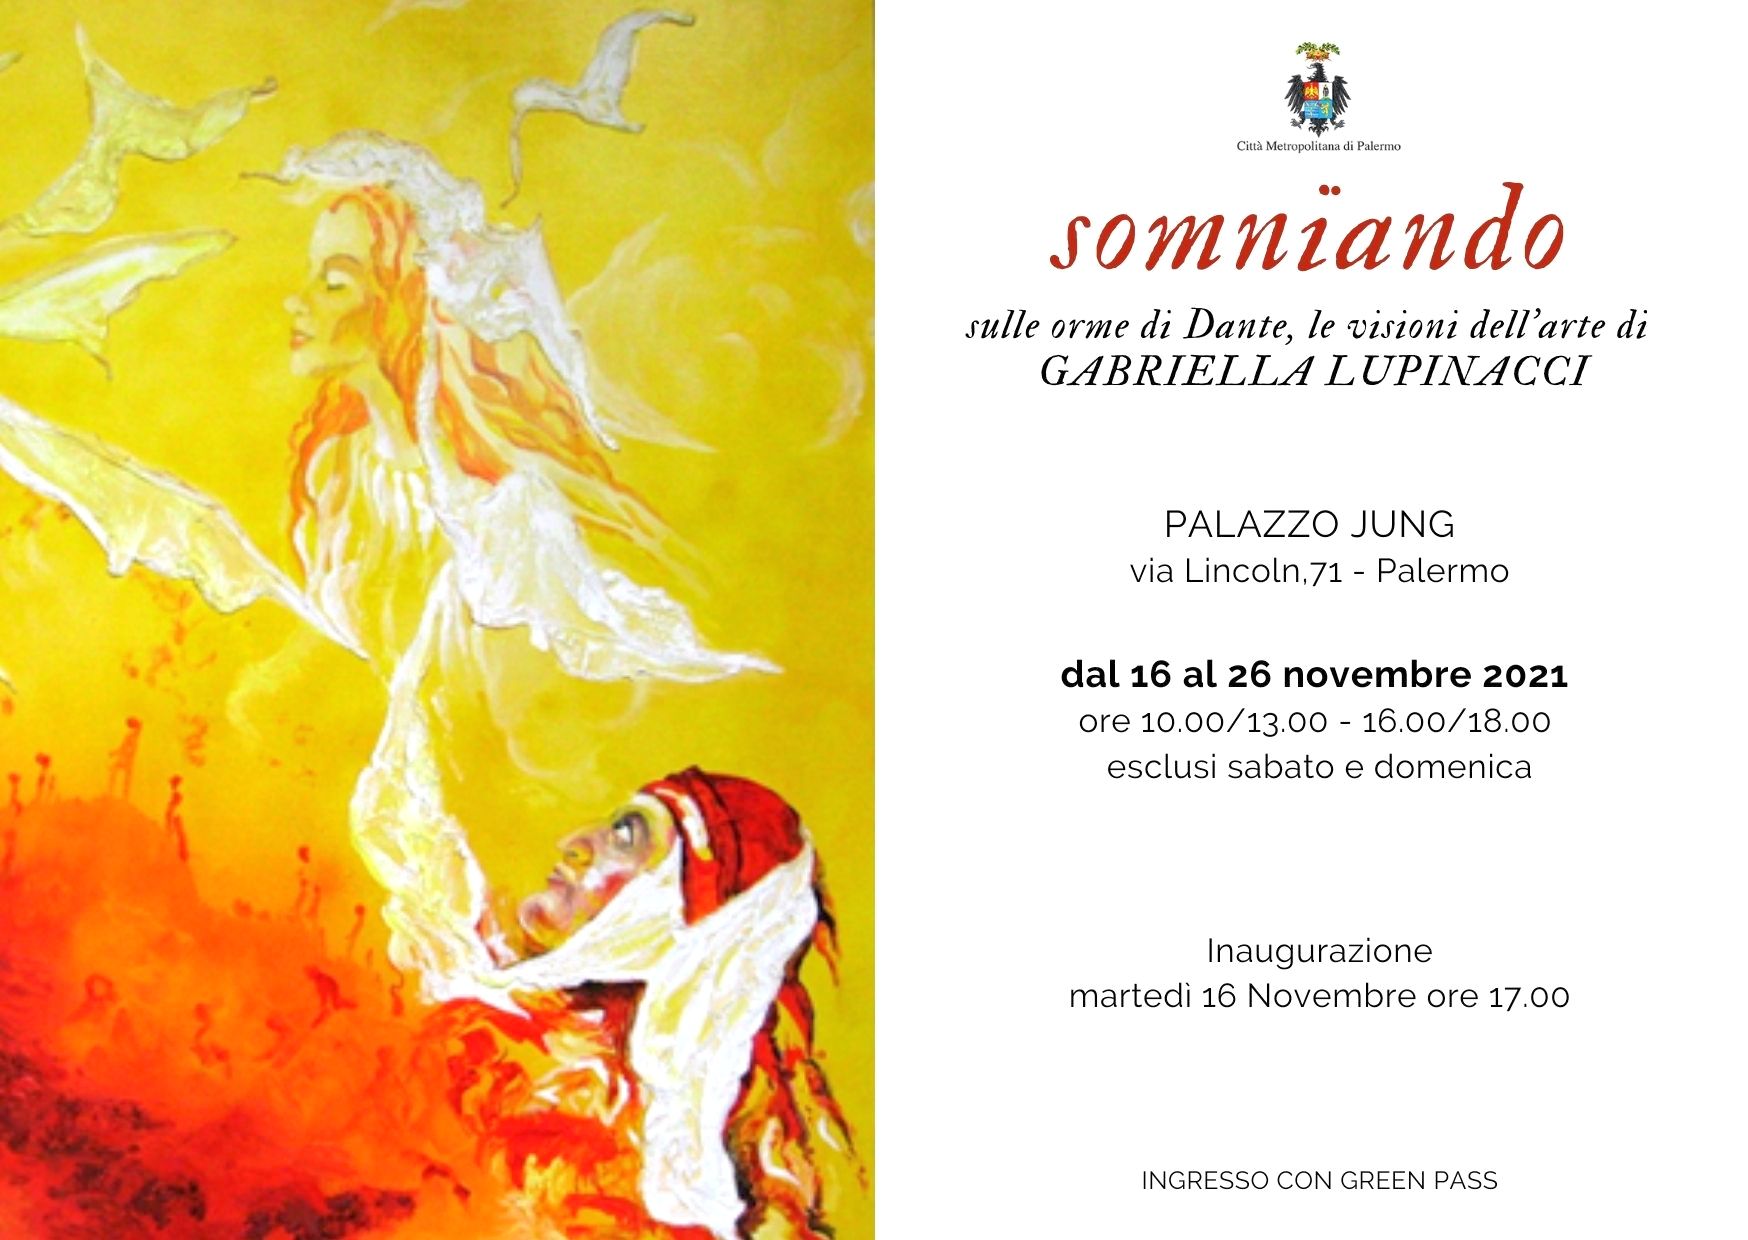 Inaugurazione della mostra "Somniando" di Gabriella Lupinacci